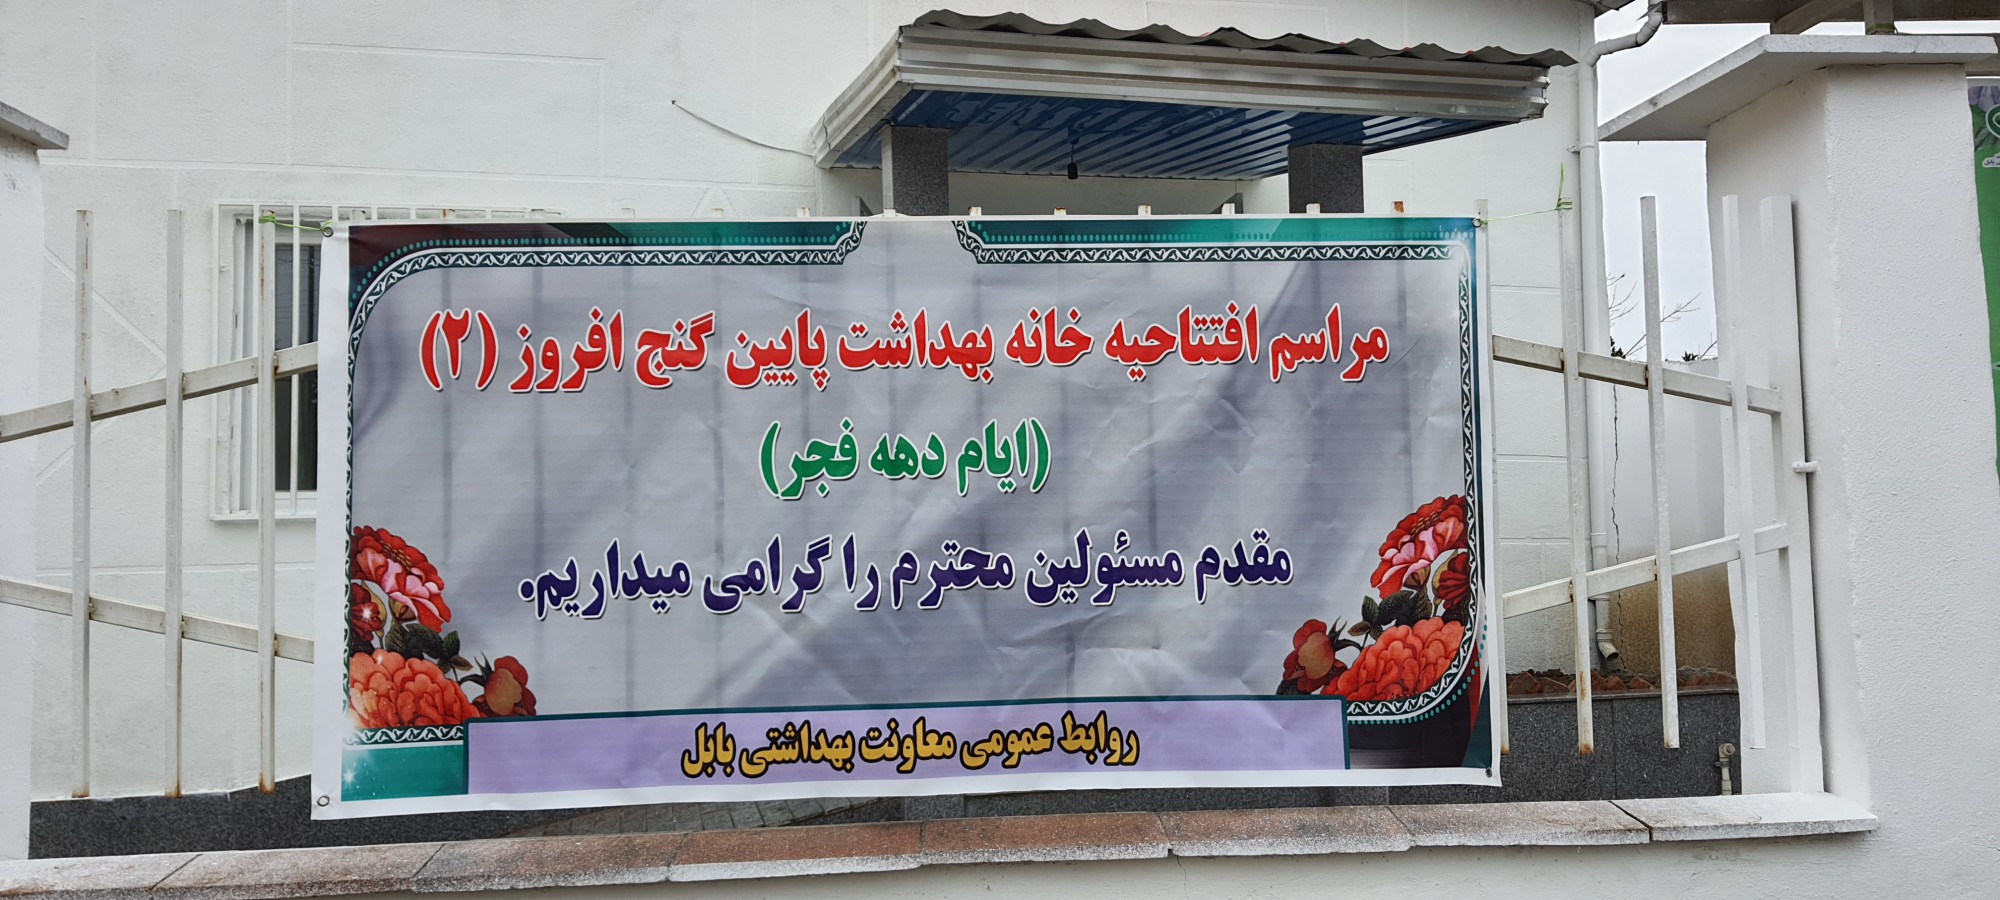 گزارش تصویری از مراسم افتتاحیه خانه بهداشت روستای پایین گنج افروز (دهمین روز از ایام الله 22 بهمن ماه  99/11/20)